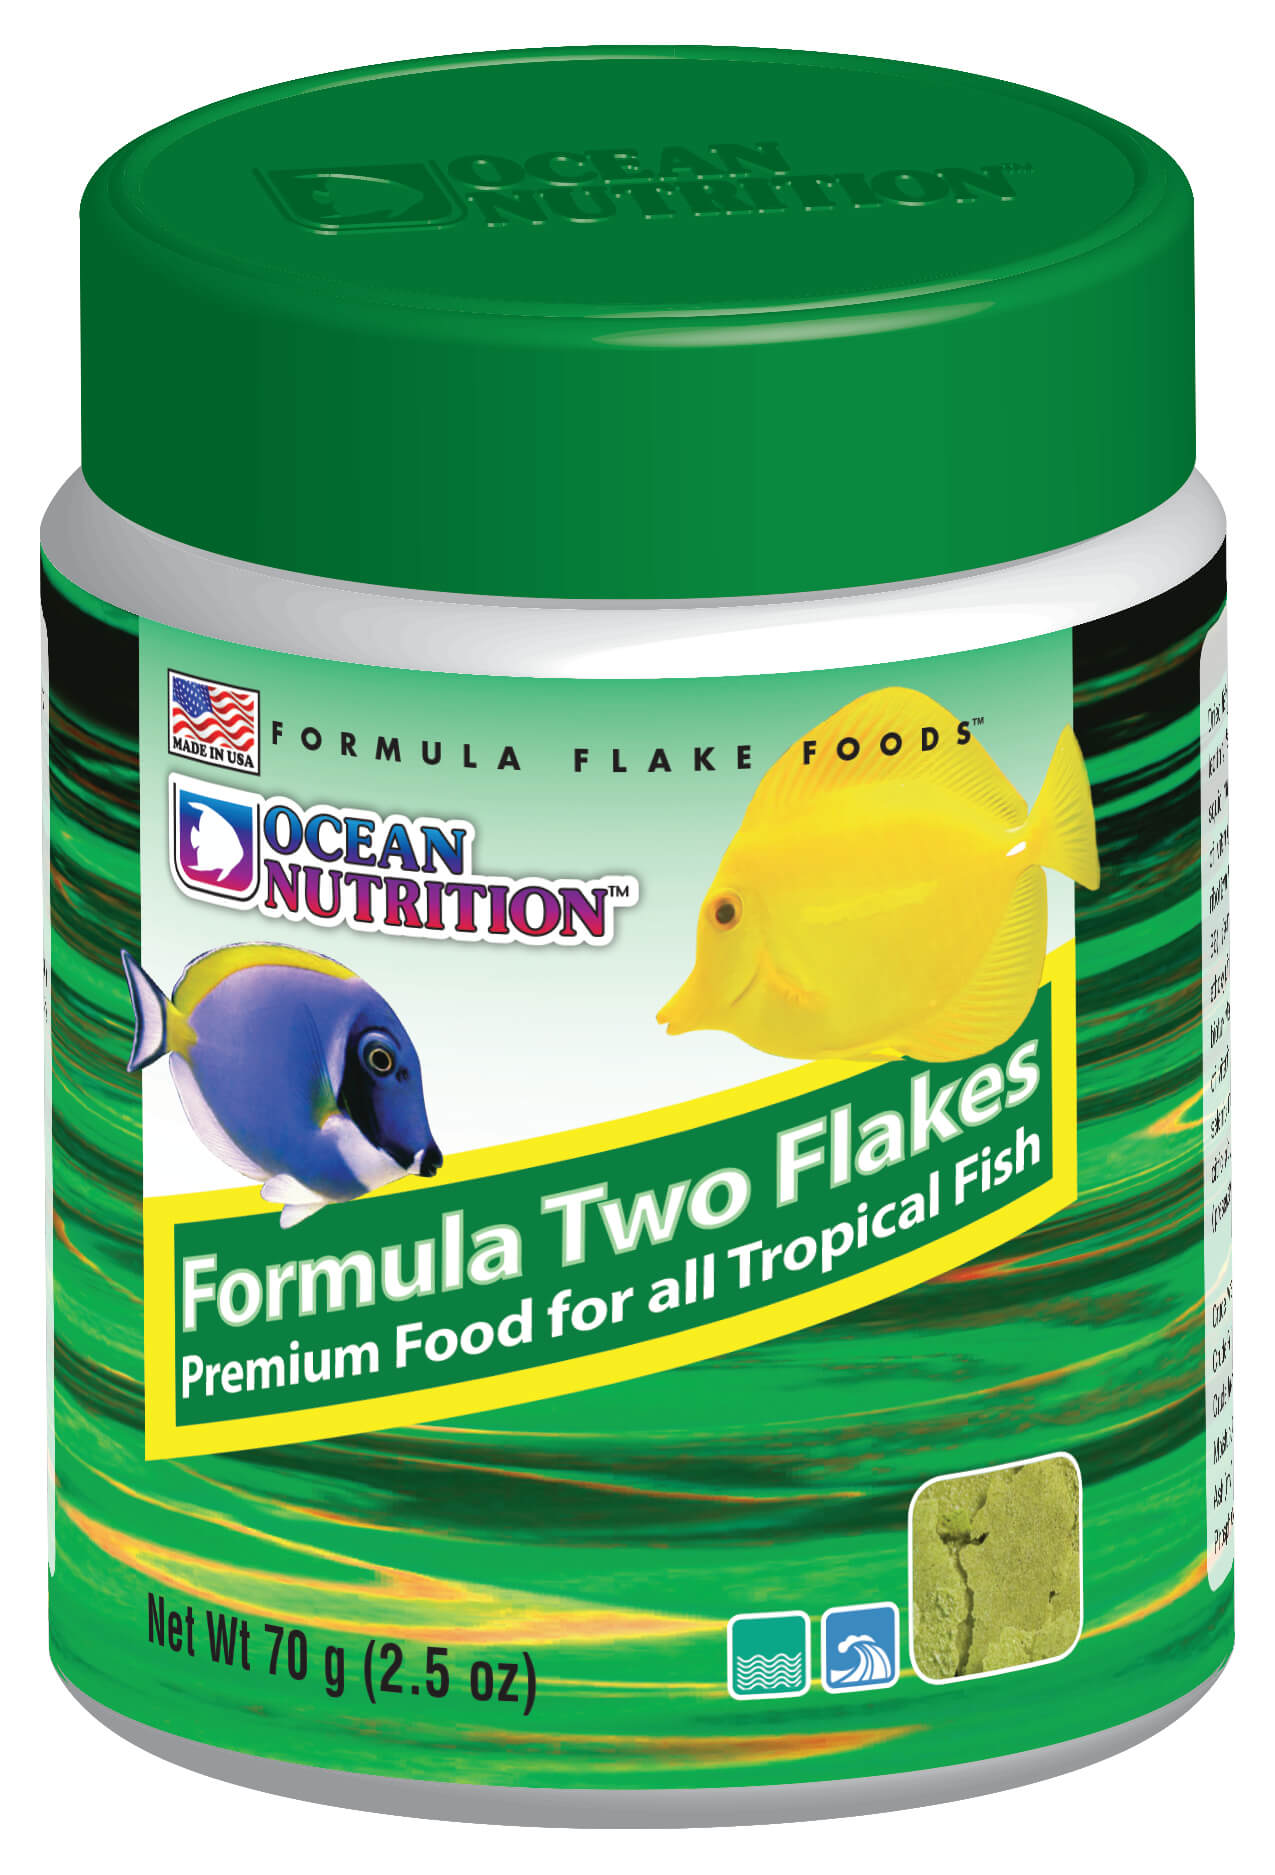 Ocean Nutrition Formula 2 Flake Food - 2.5oz